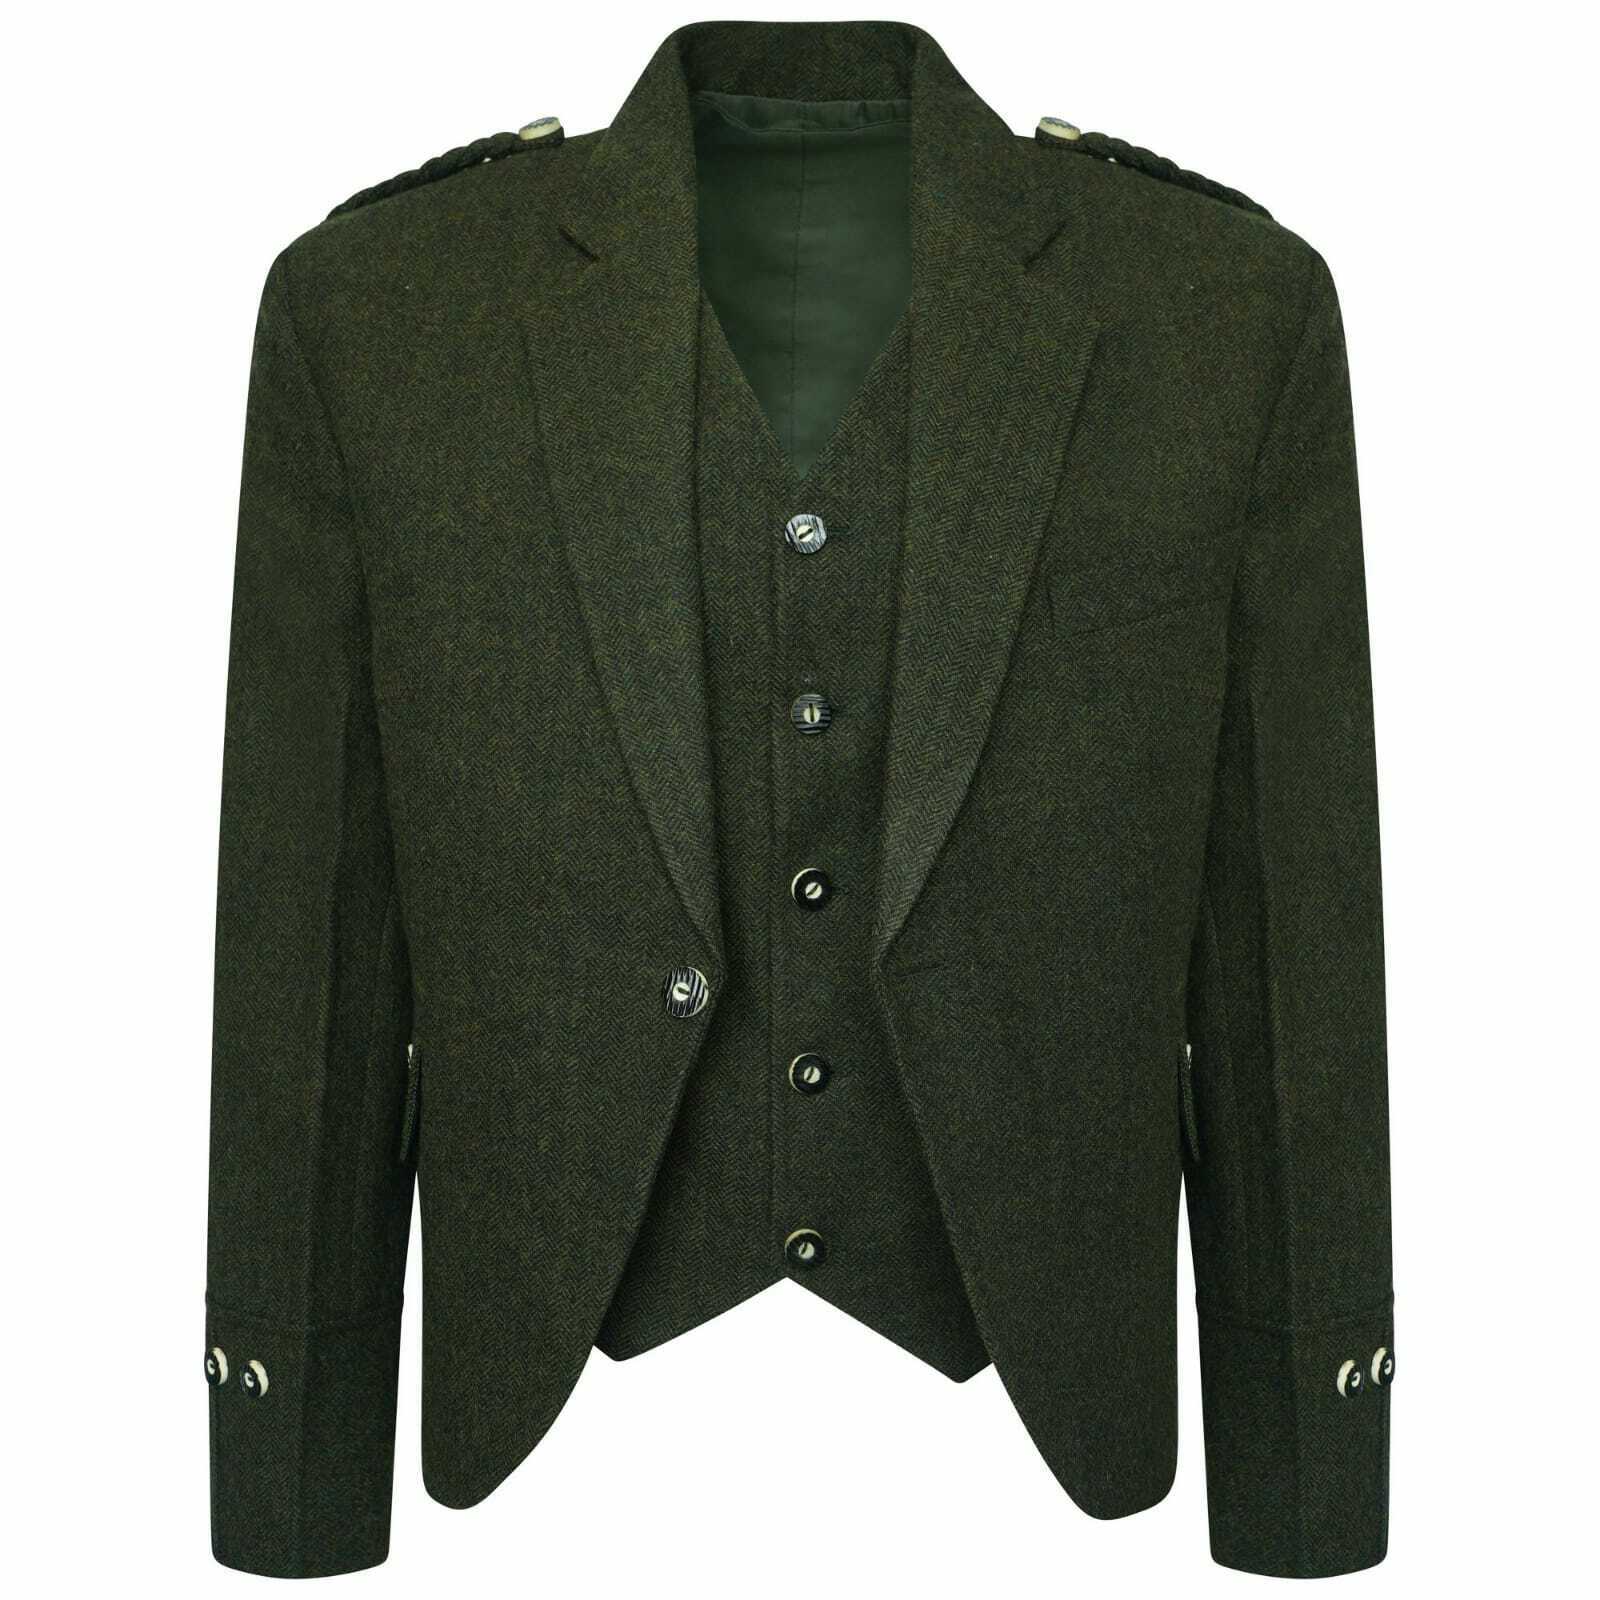 Olive Green Tweed kilt jacket With 5 Button Vest - Scottish Kilt Collection